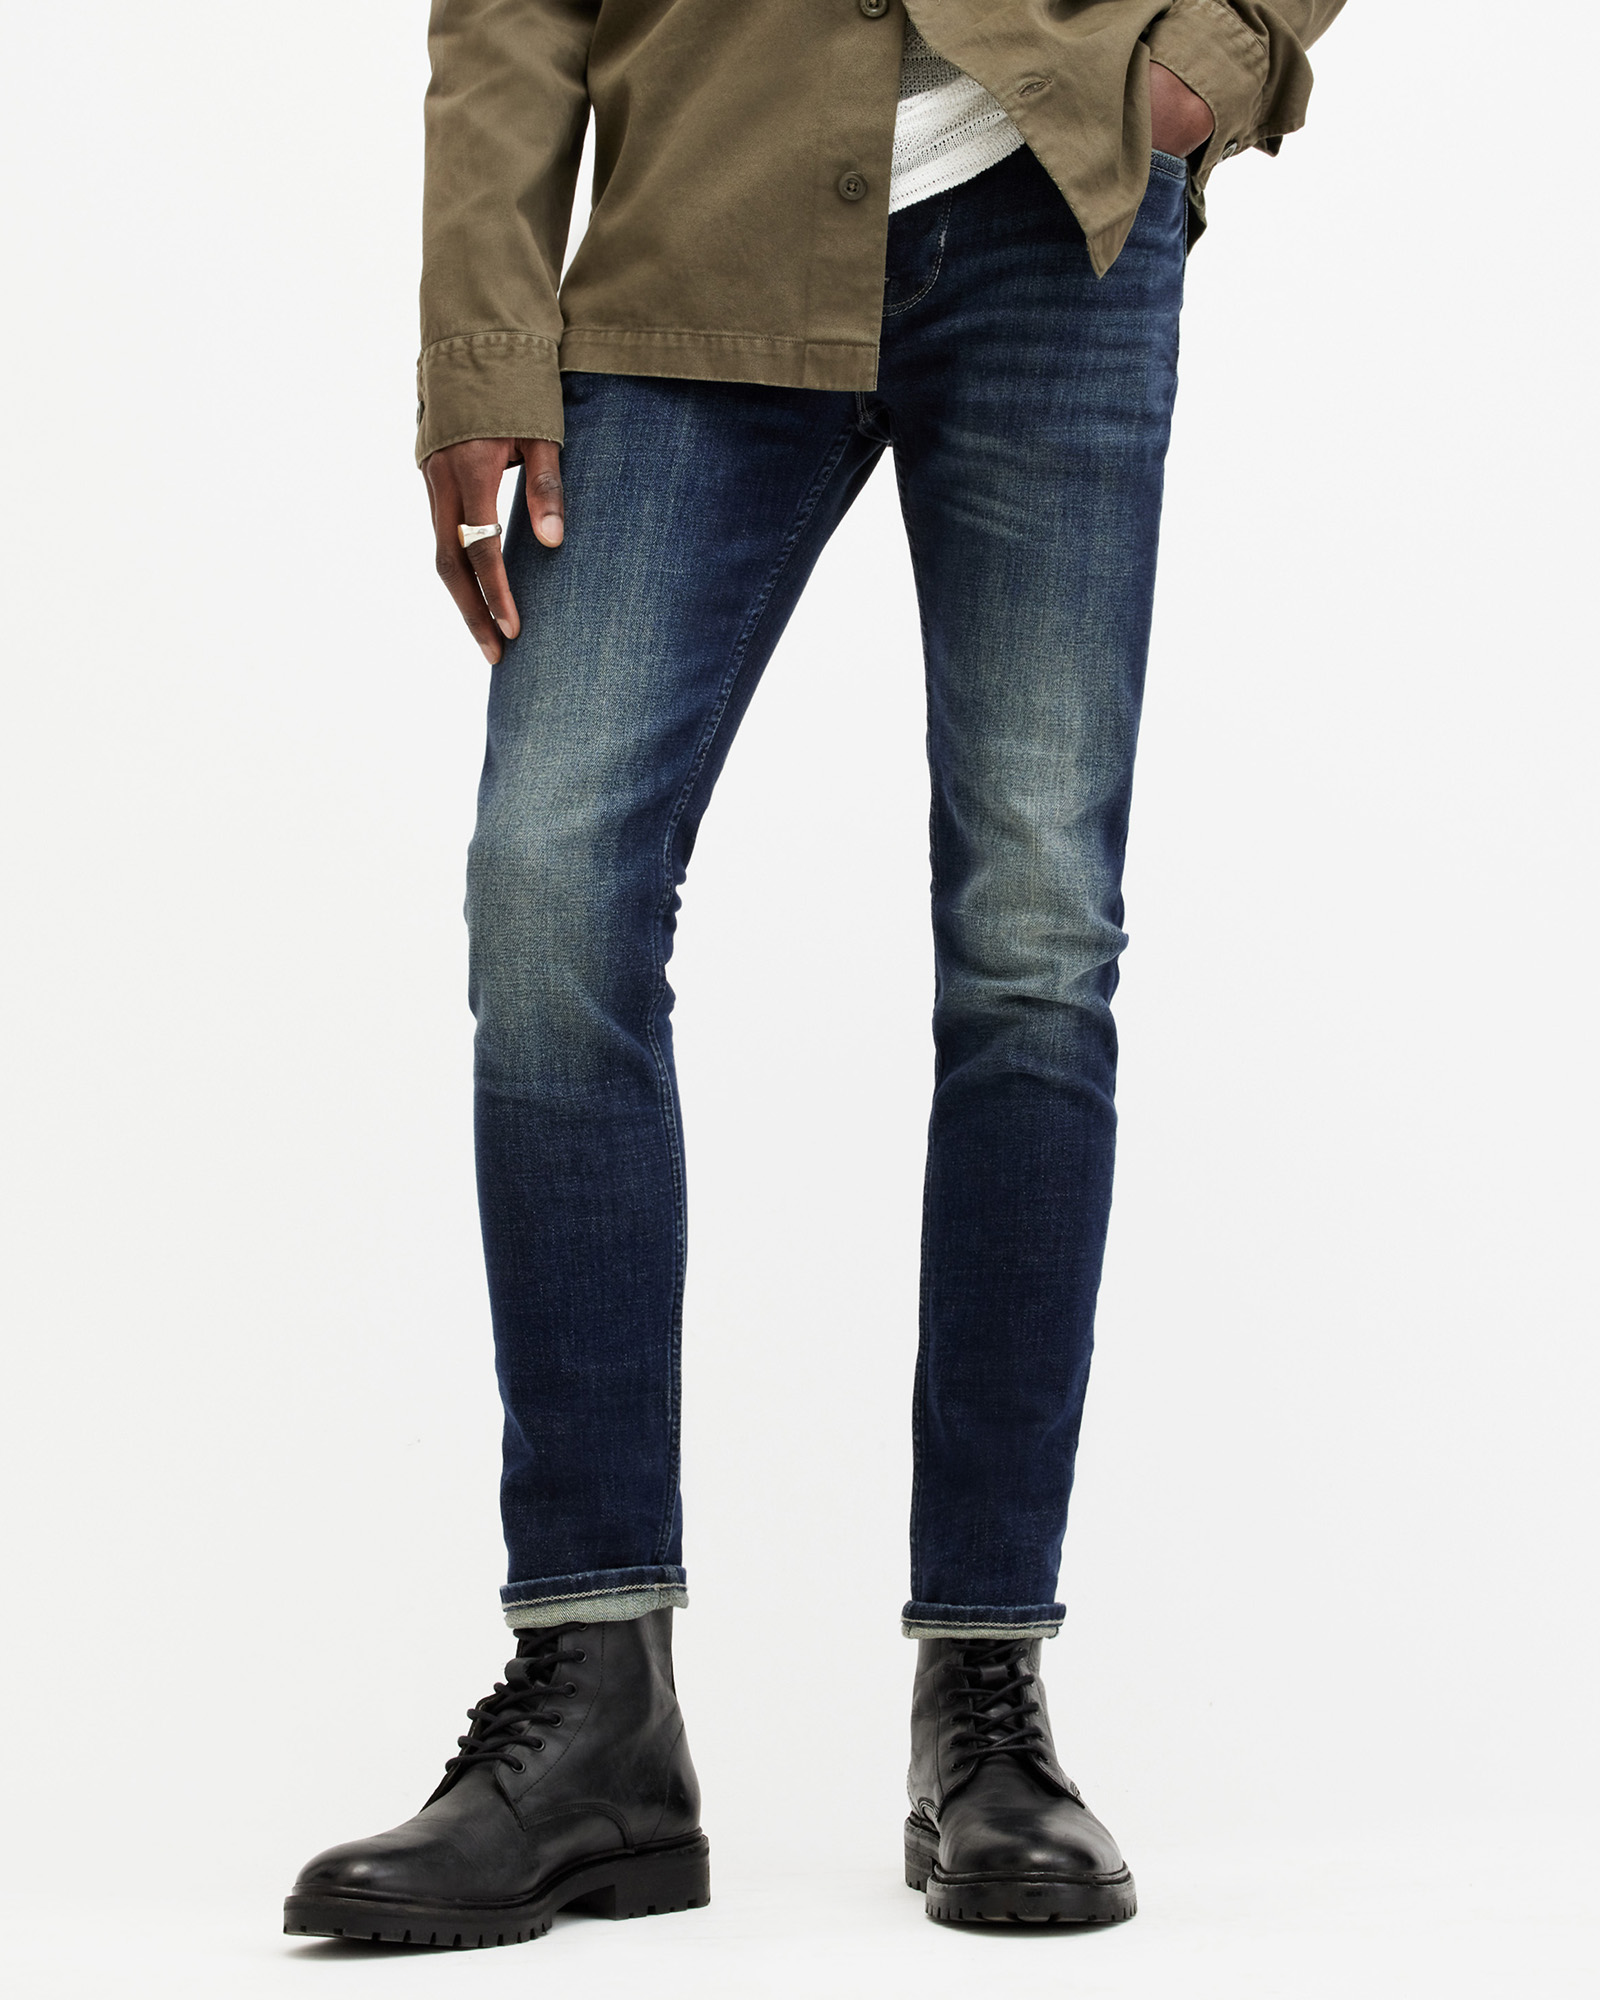 AllSaints Men's Cotton Traditional Cigarette Skinny Jeans, Blue, Size: 30/L30